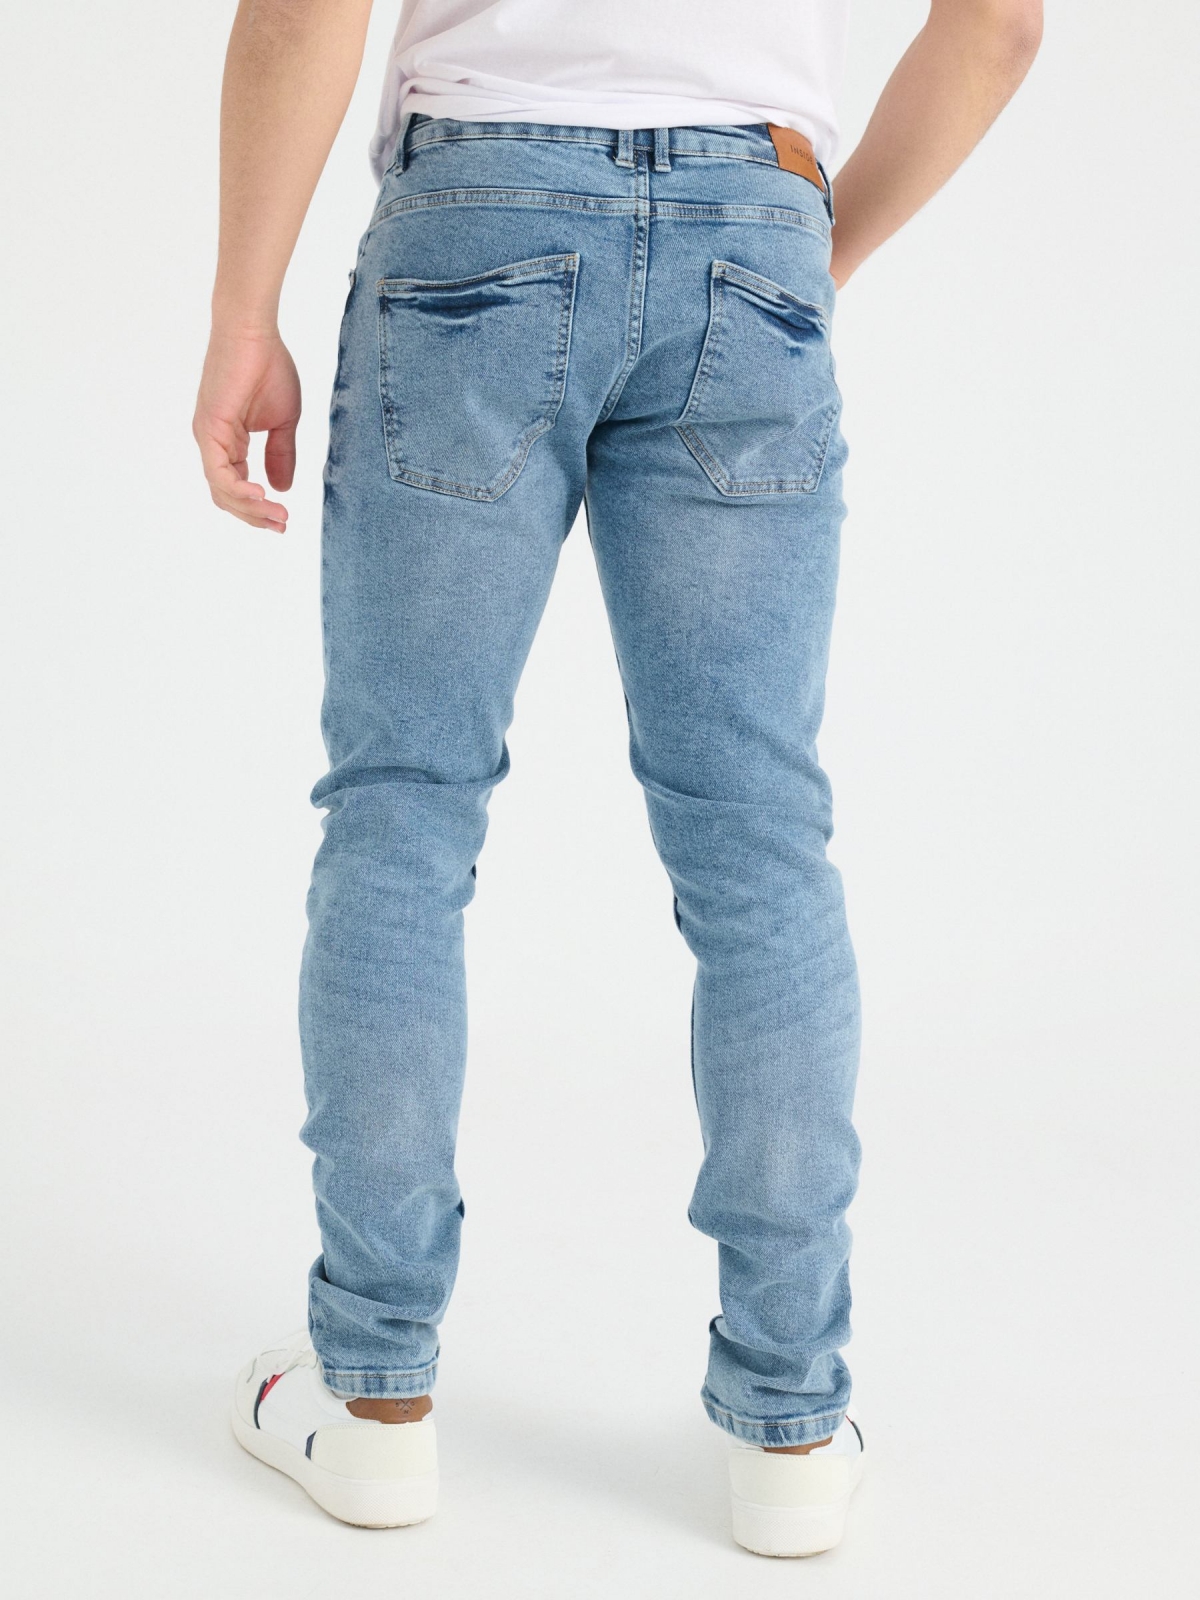 Jeans slim rasgados azul vista meia traseira